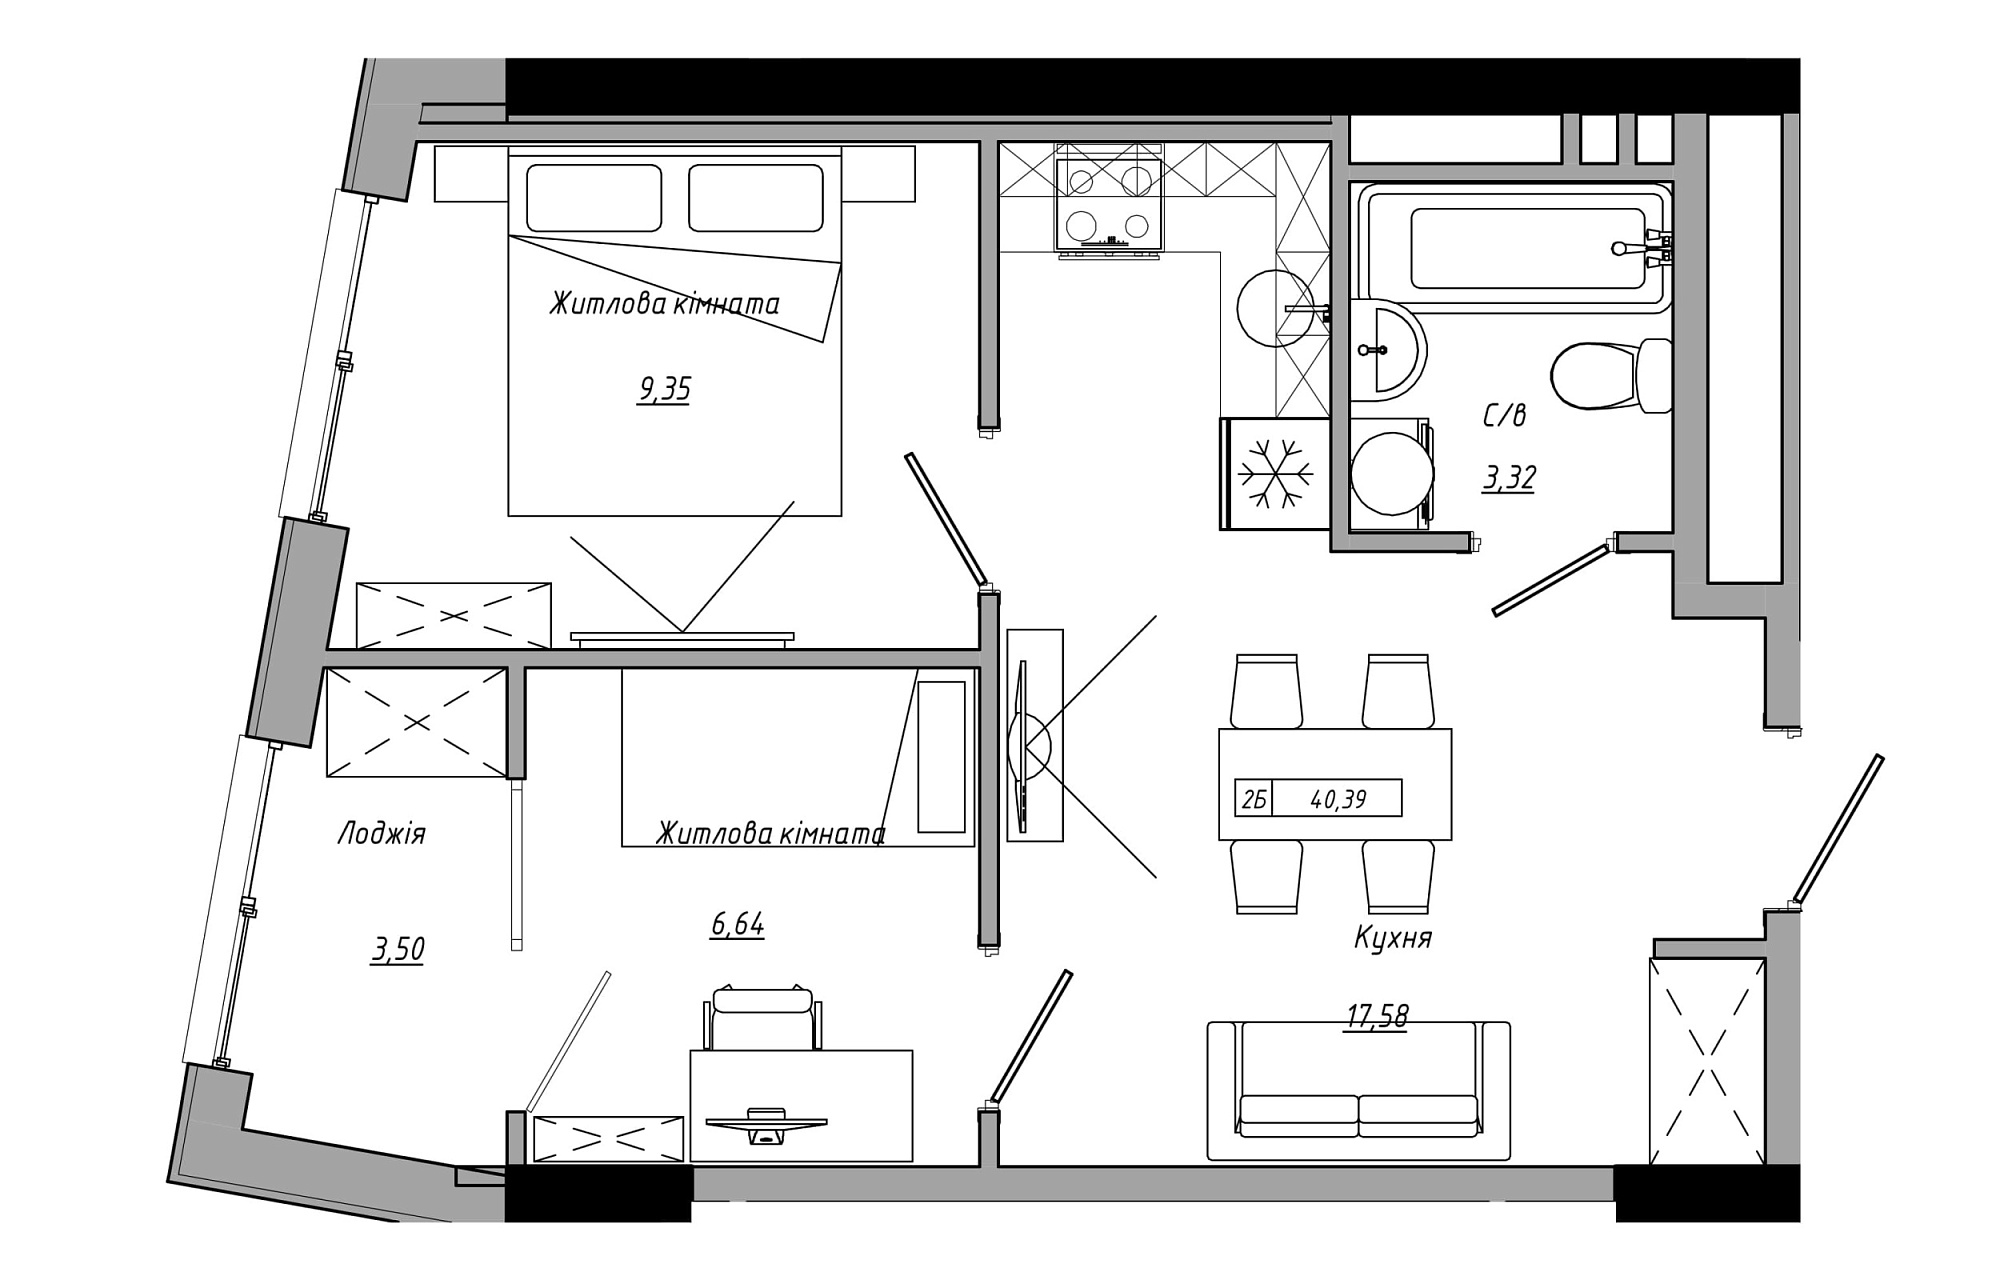 Планування 2-к квартира площею 40.39м2, AB-21-05/00007.